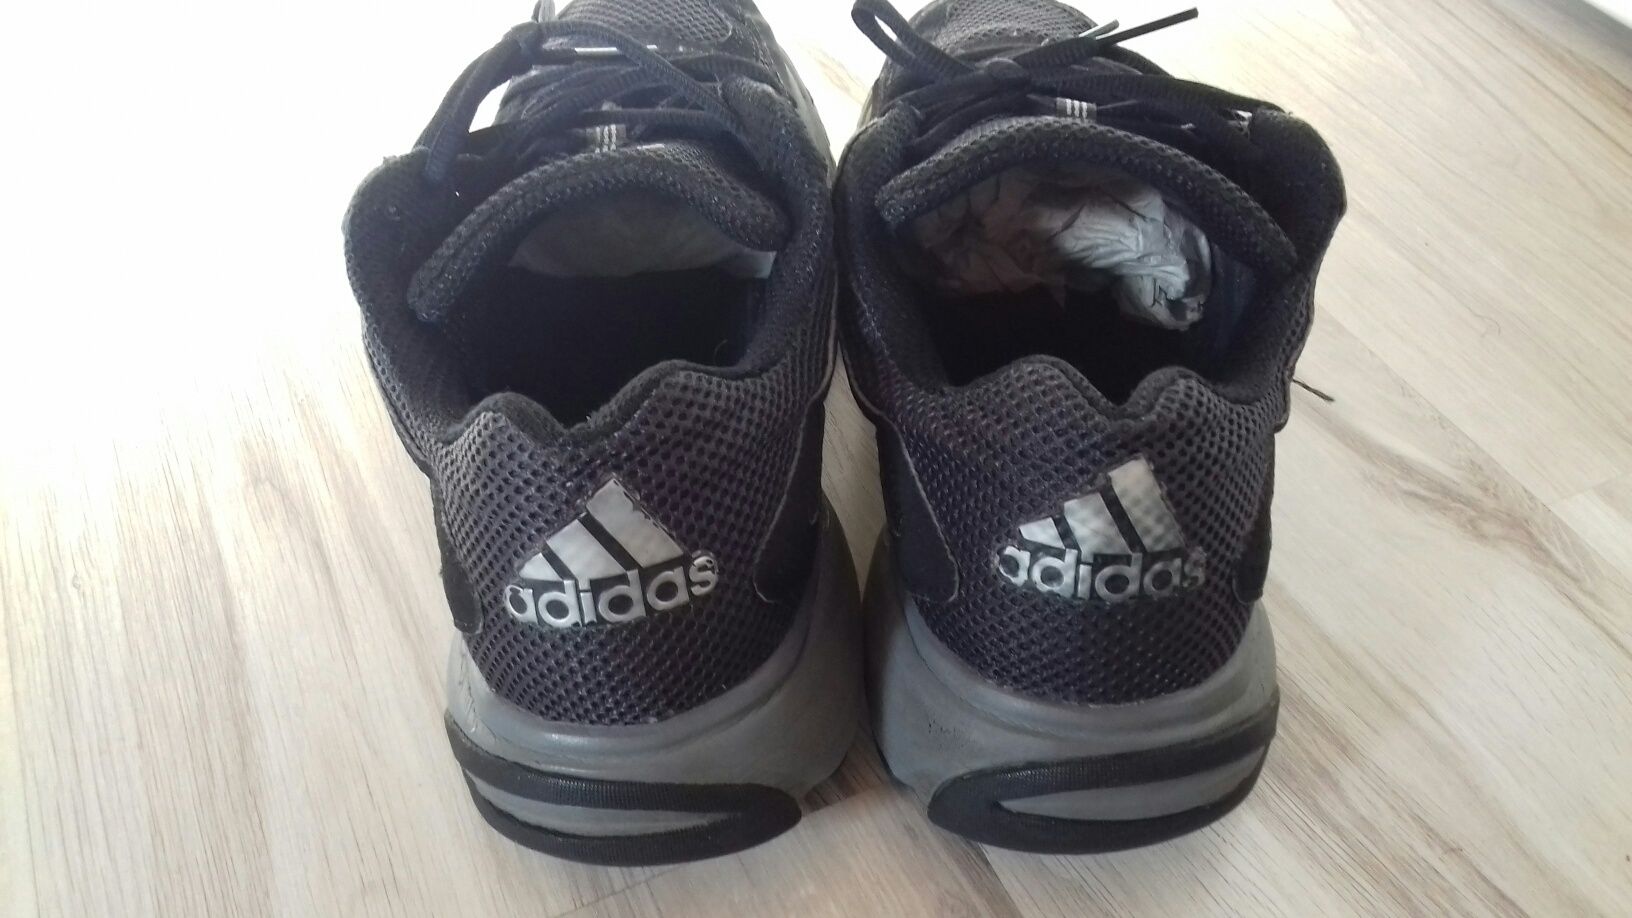 Adidas male male rozmiar 44,5 dl wkładki 27,5 cm